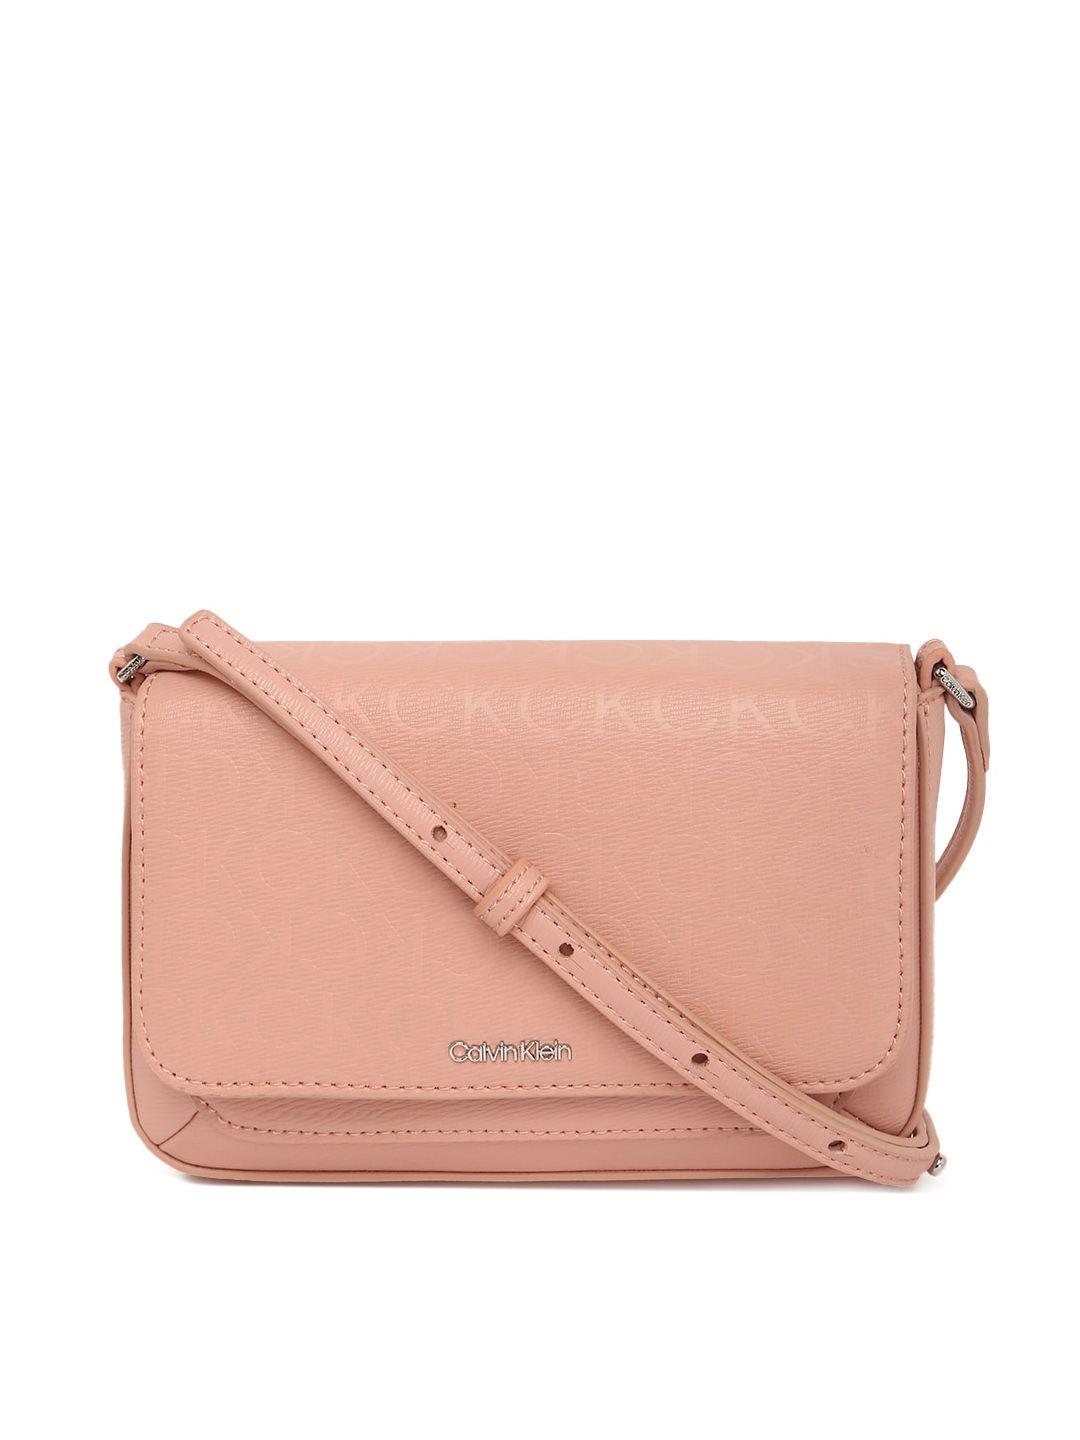 calvin-klein-jeans-pink-structured-sling-bag